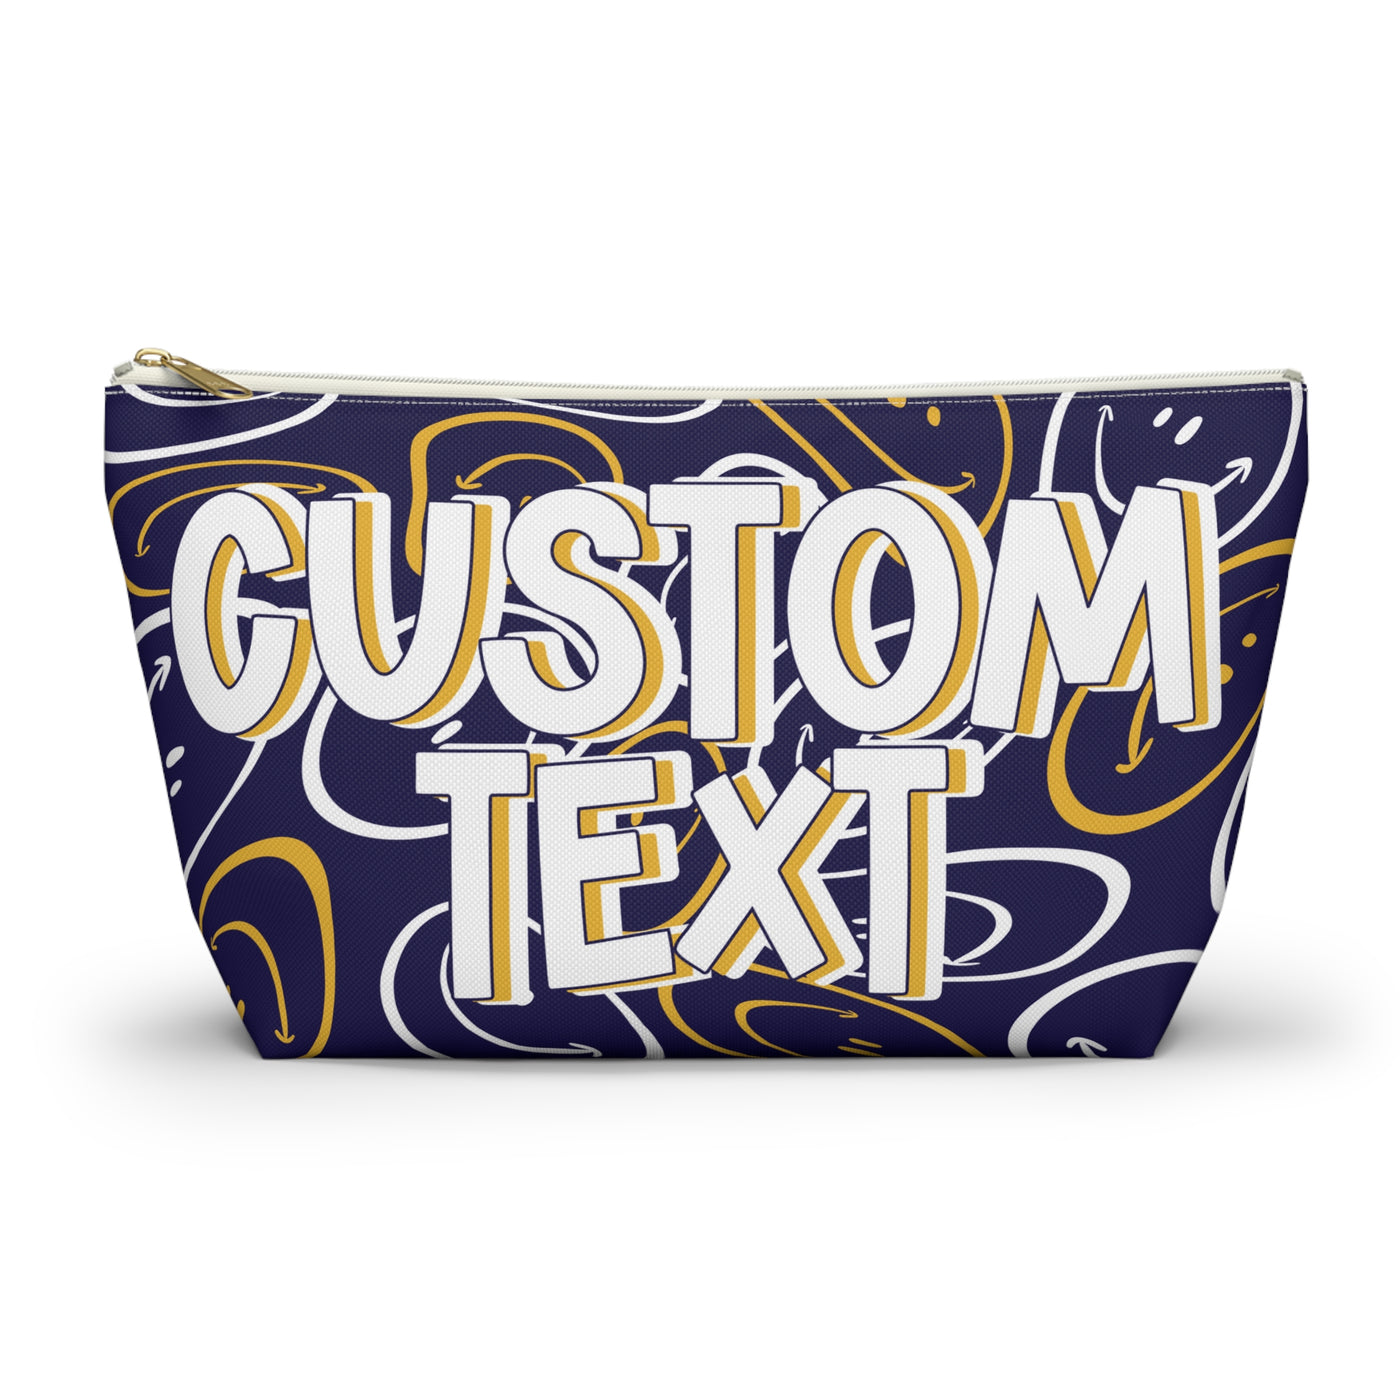 Custom Text - Navy and Gold Makeup Bag